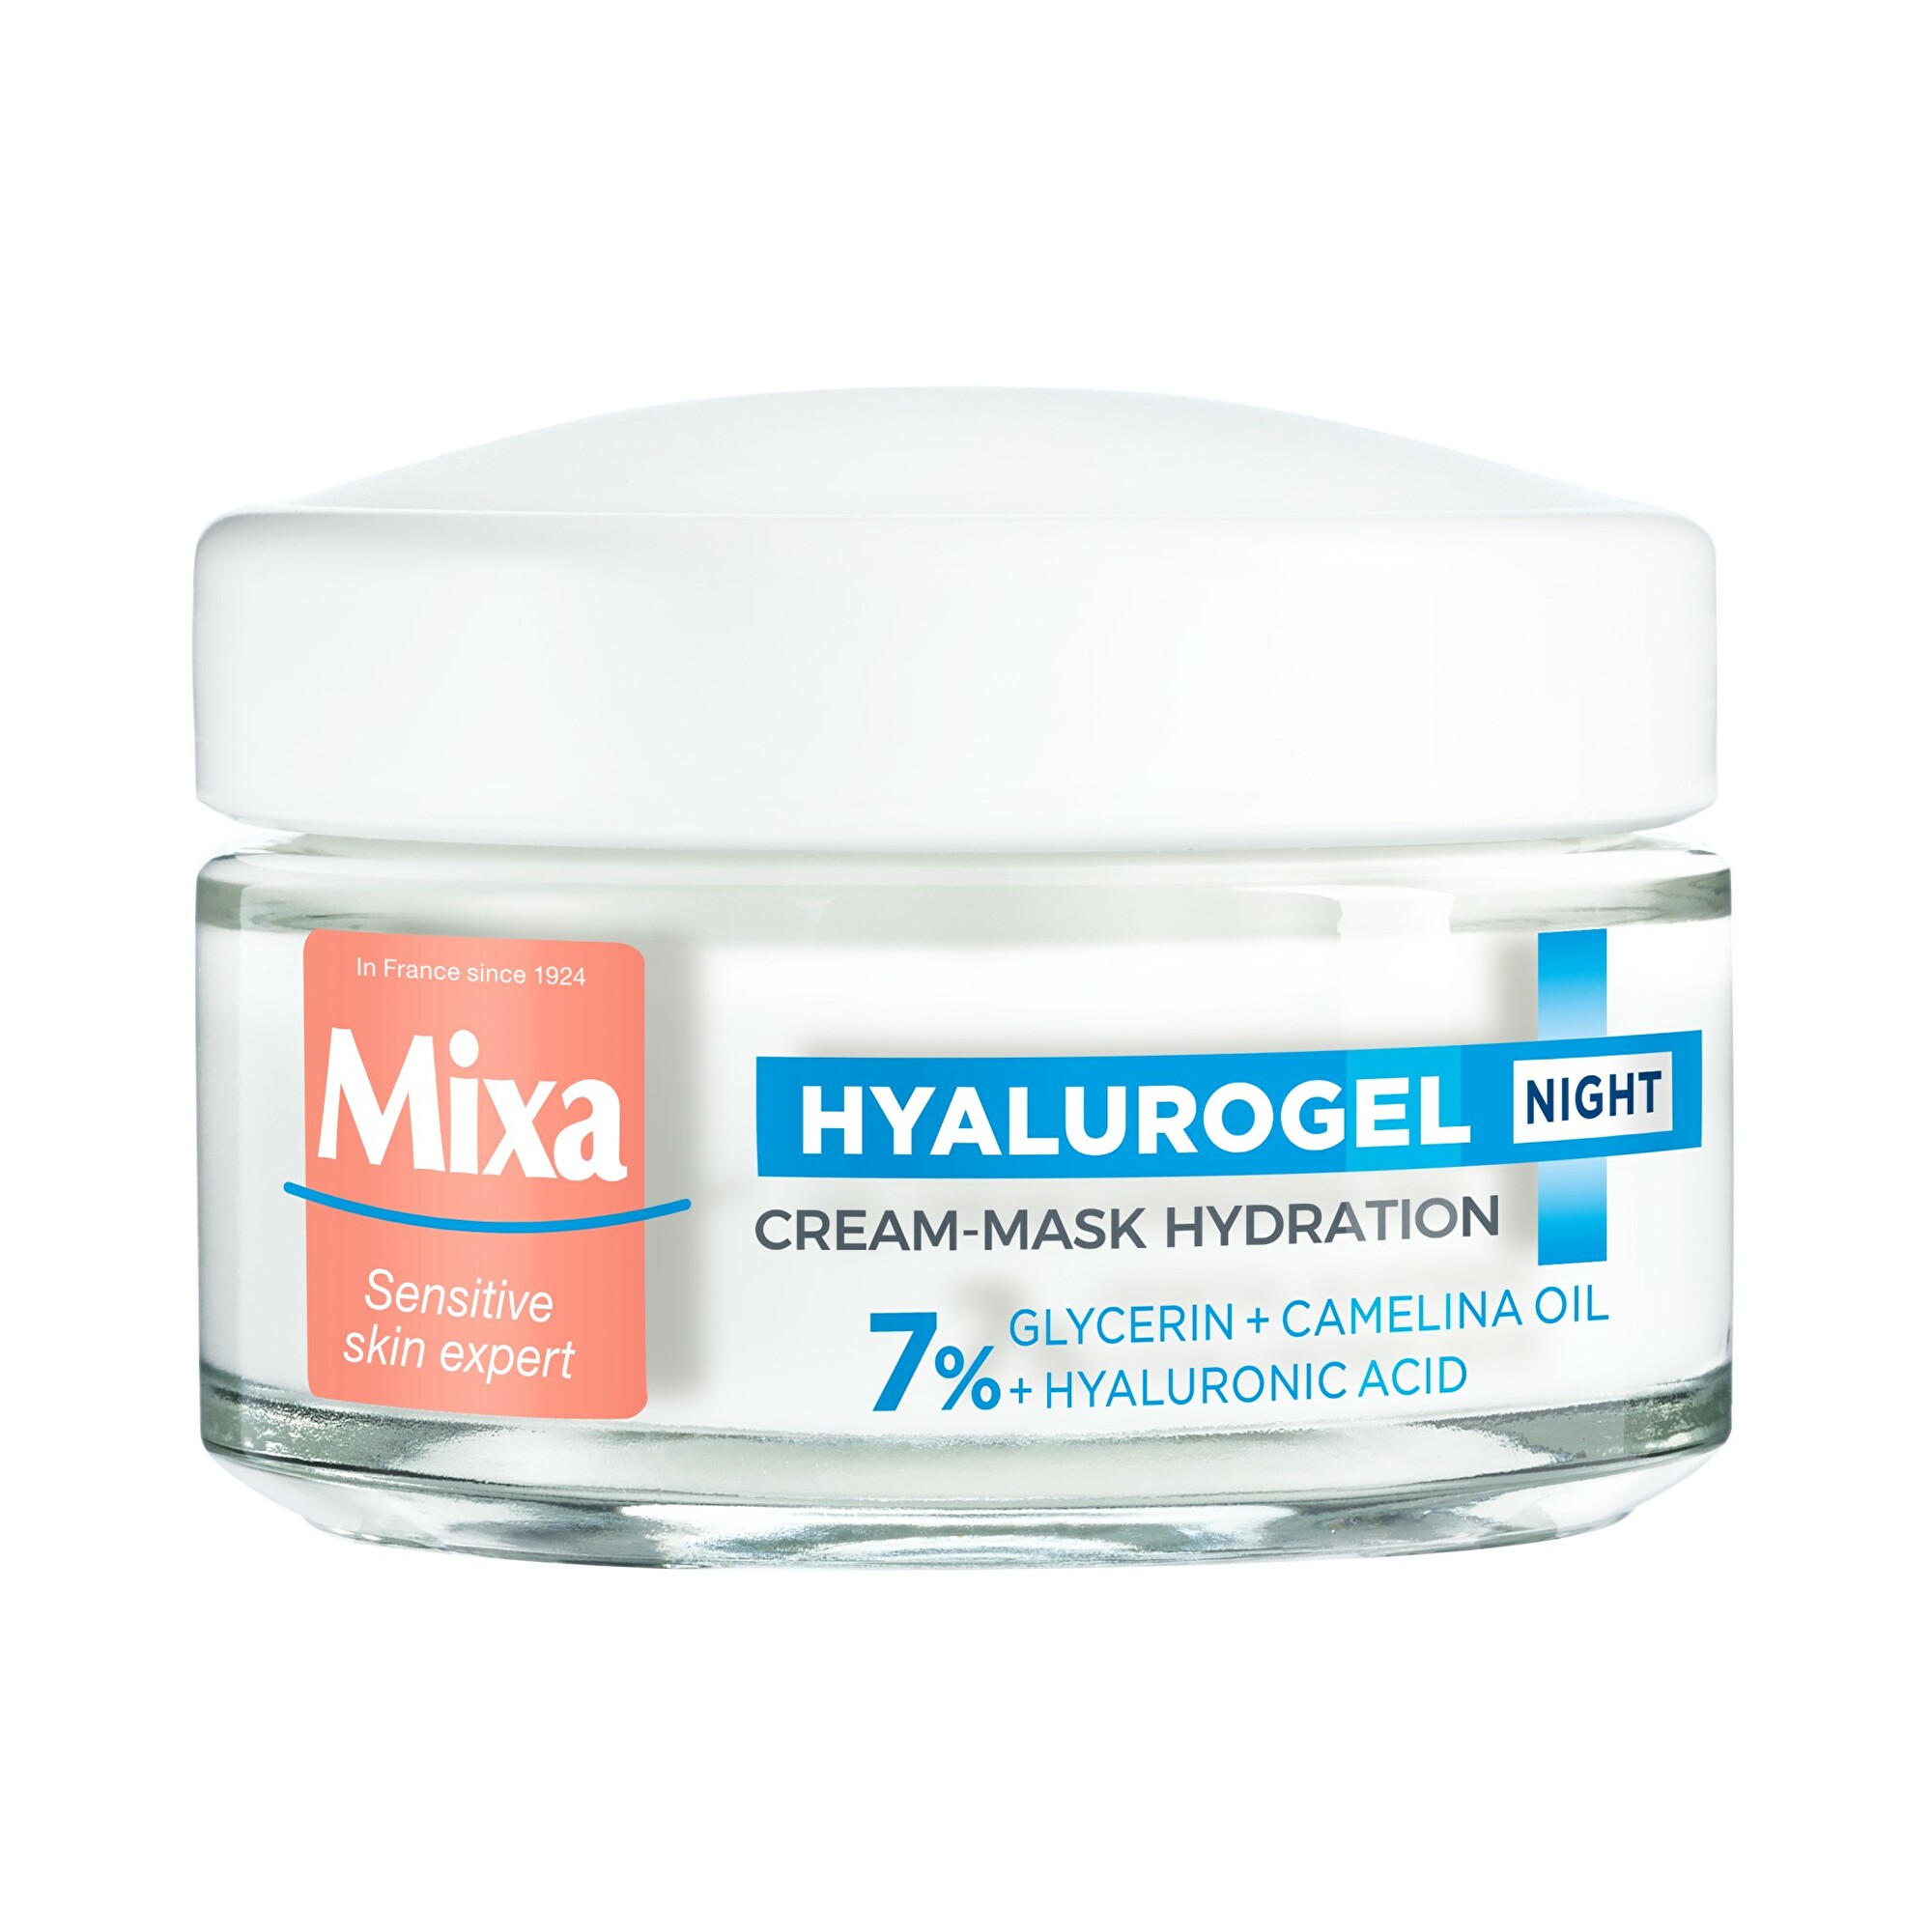 Mixa Noční krém pro citlivou pleť se sklonem k vysušení Hyalurogel (Hydrating Cream-Mask Overnight Recovery) 50 ml